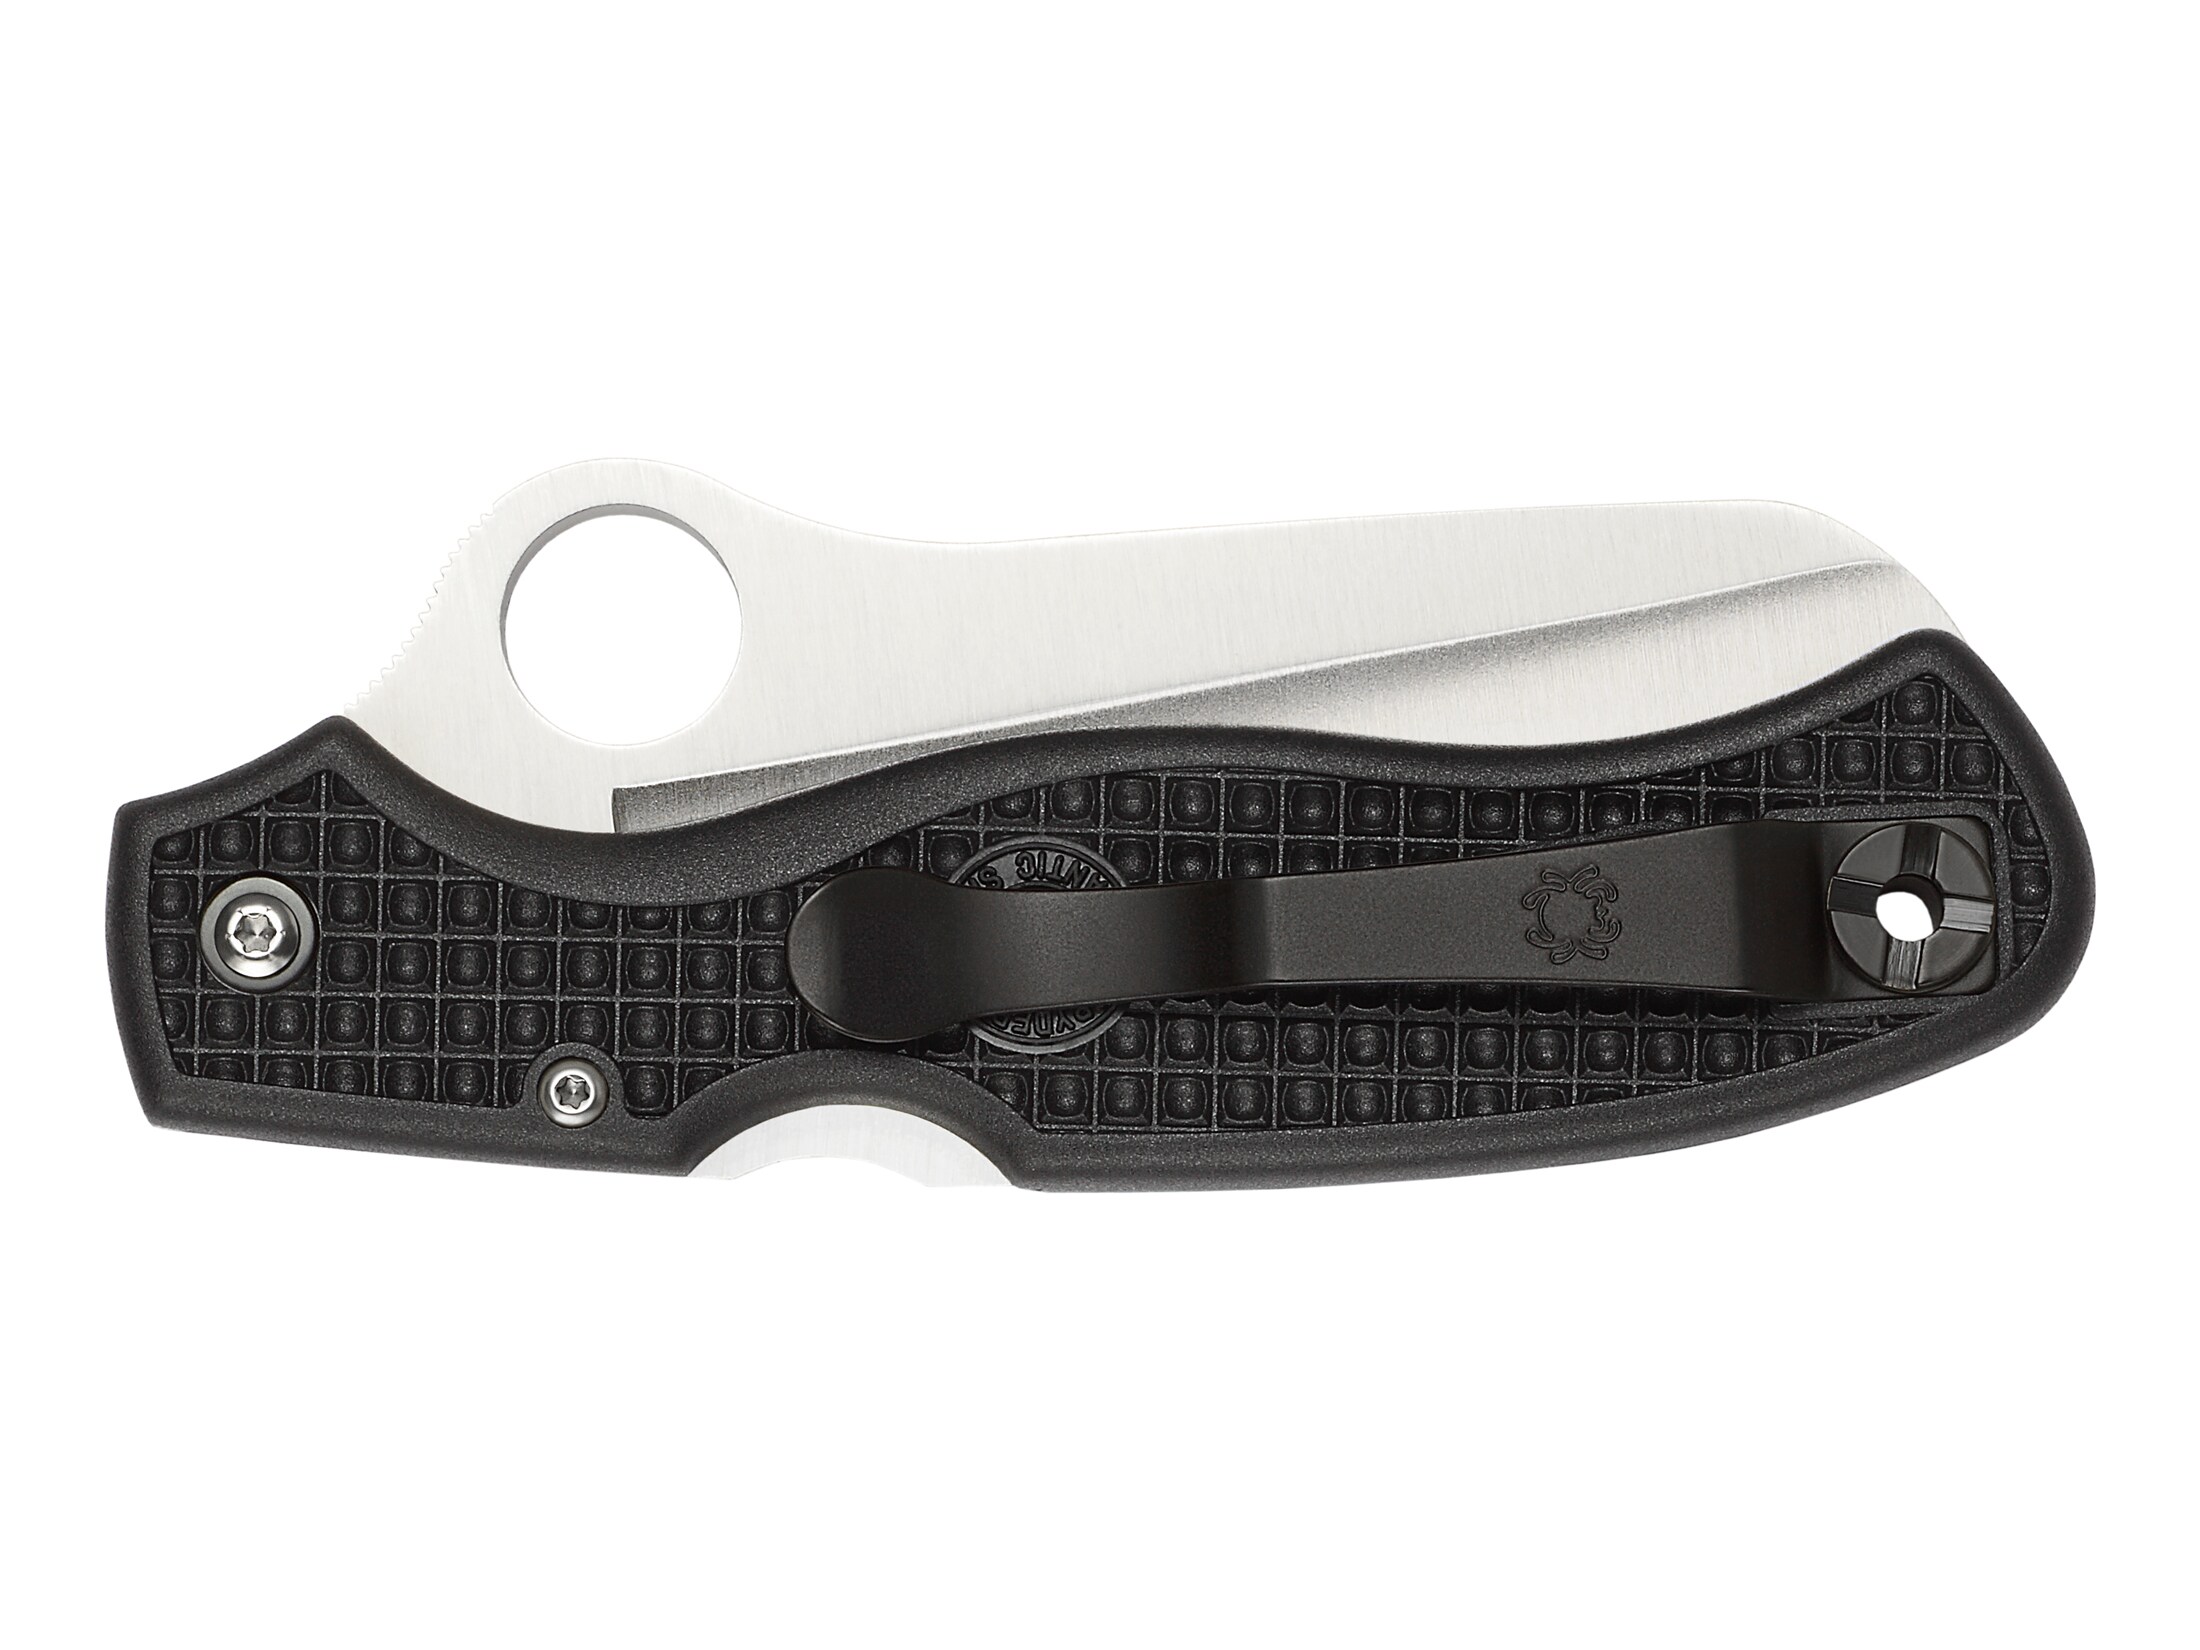 Spyderco Atlantic Salt Folding Knife H-1 Stainless Steel Blade For Sale